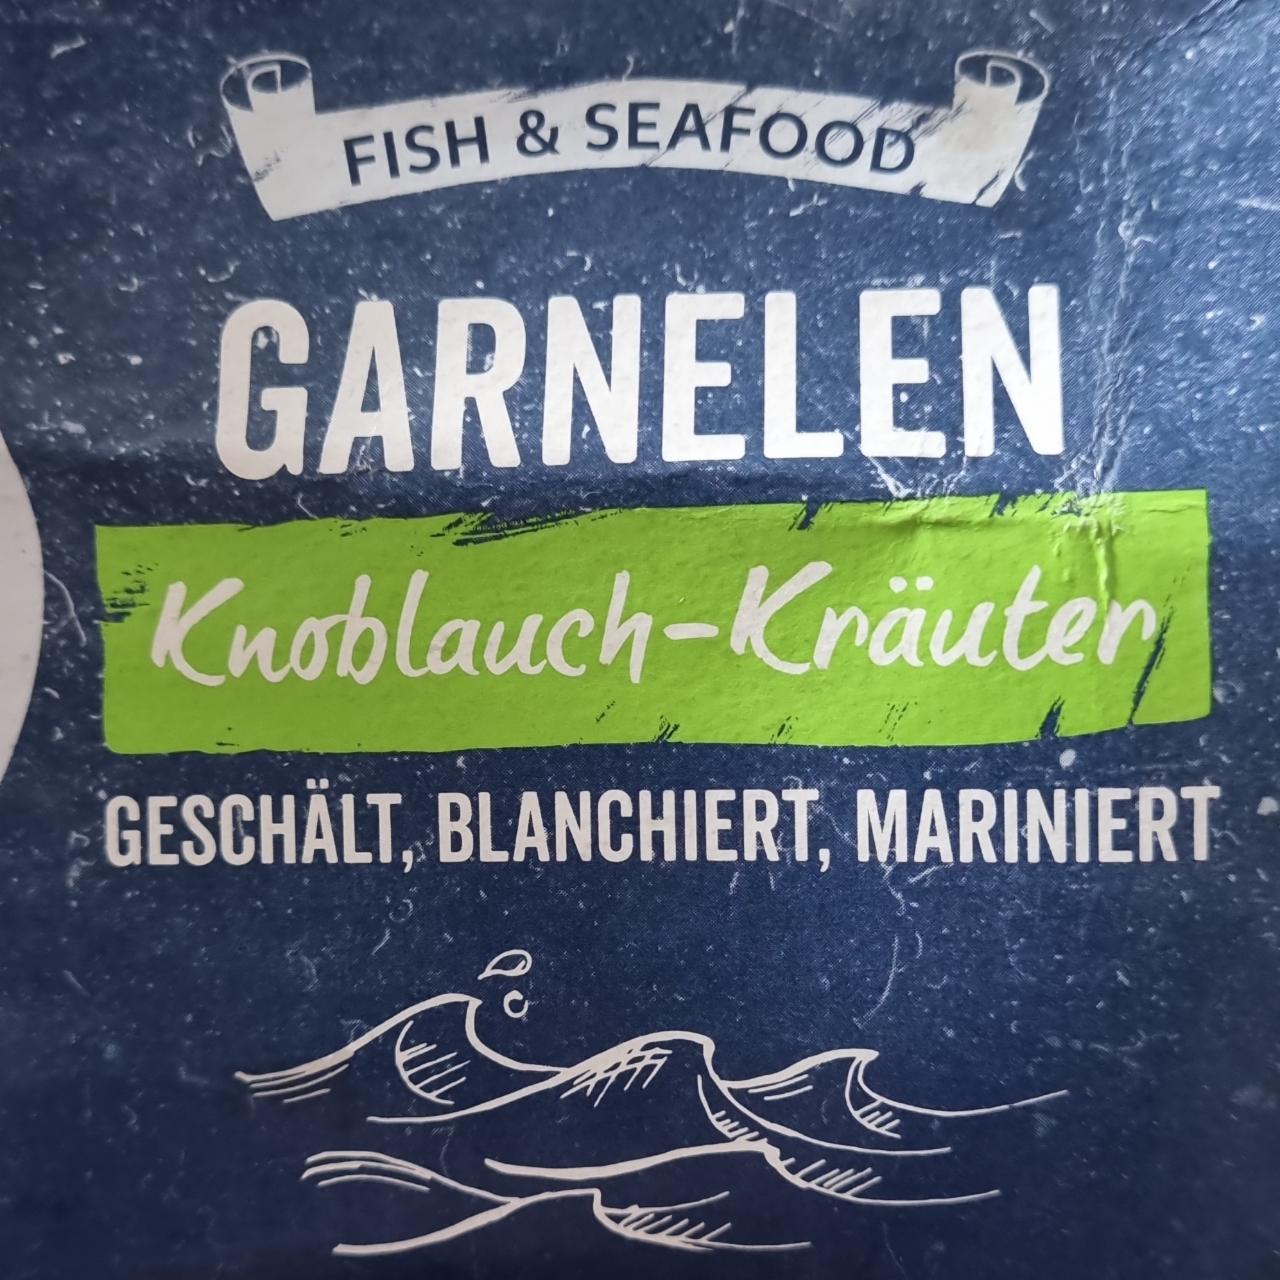 Fotografie - Garnelen knoblauch-krauter Fish & seafood